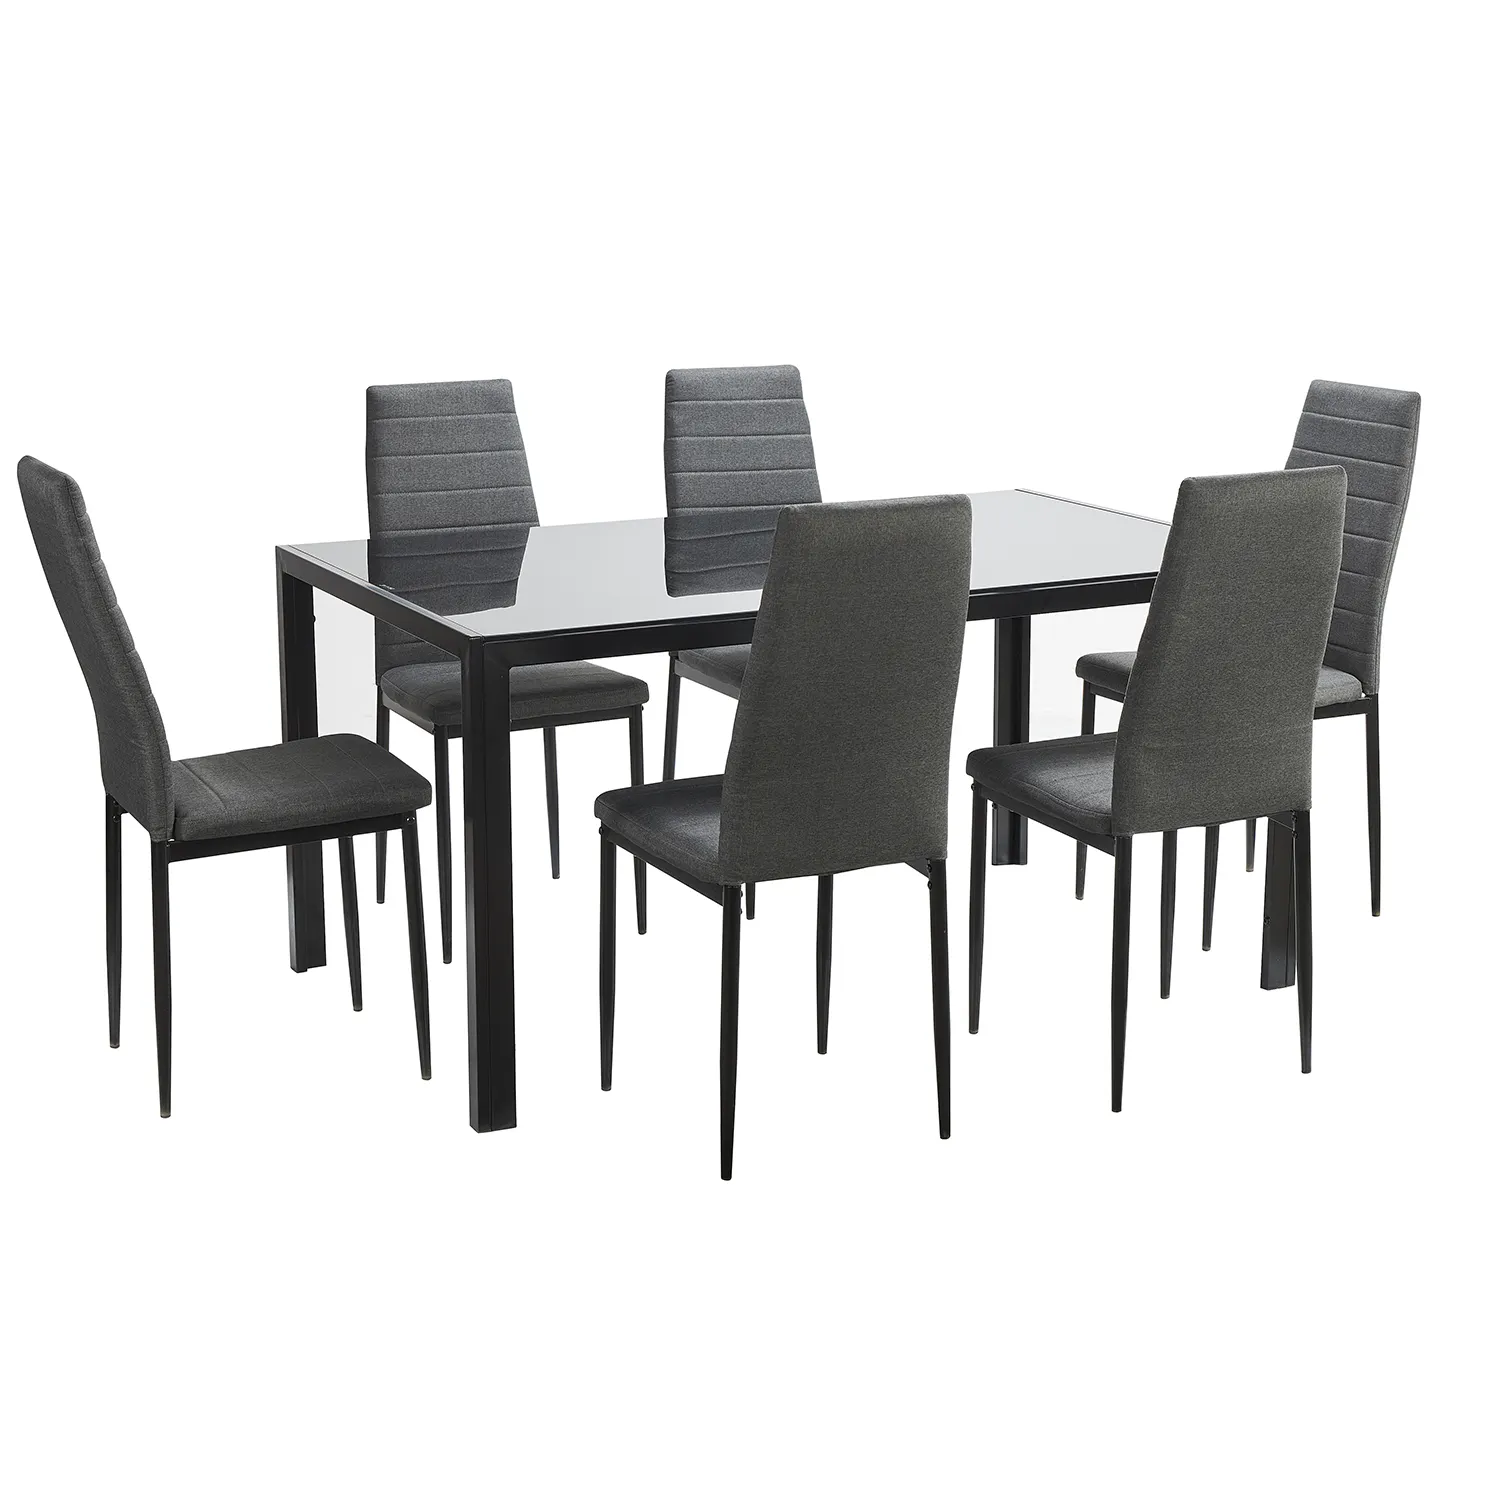 Mobiliário nórdico moderno para sala de jantar, cadeira de jantar em couro pu, conjunto de mesa de jantar em vidro com 6 cadeiras